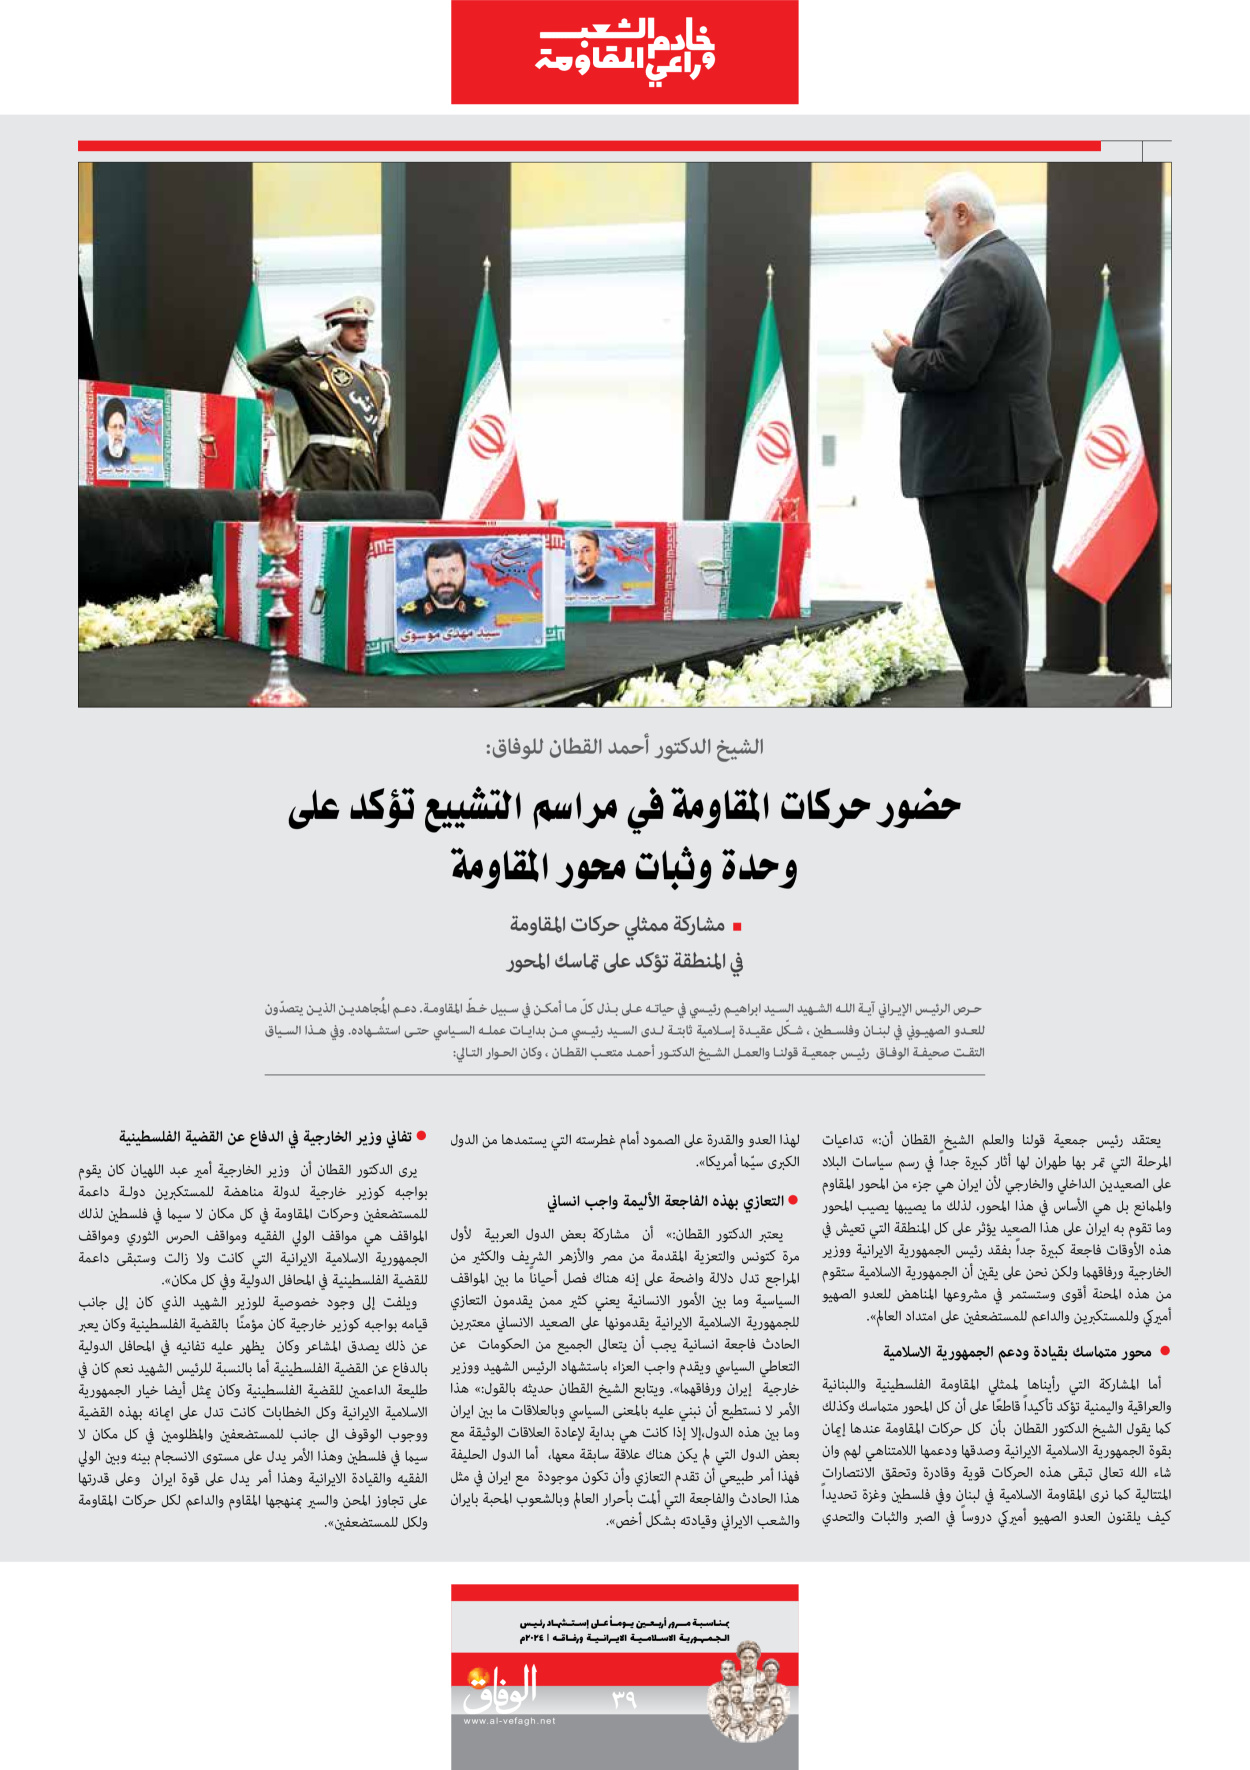 صحیفة ایران الدولیة الوفاق - ملحق ویژه نامه چهلم شهید رییسی - ٢٩ يونيو ٢٠٢٤ - الصفحة ۳۹